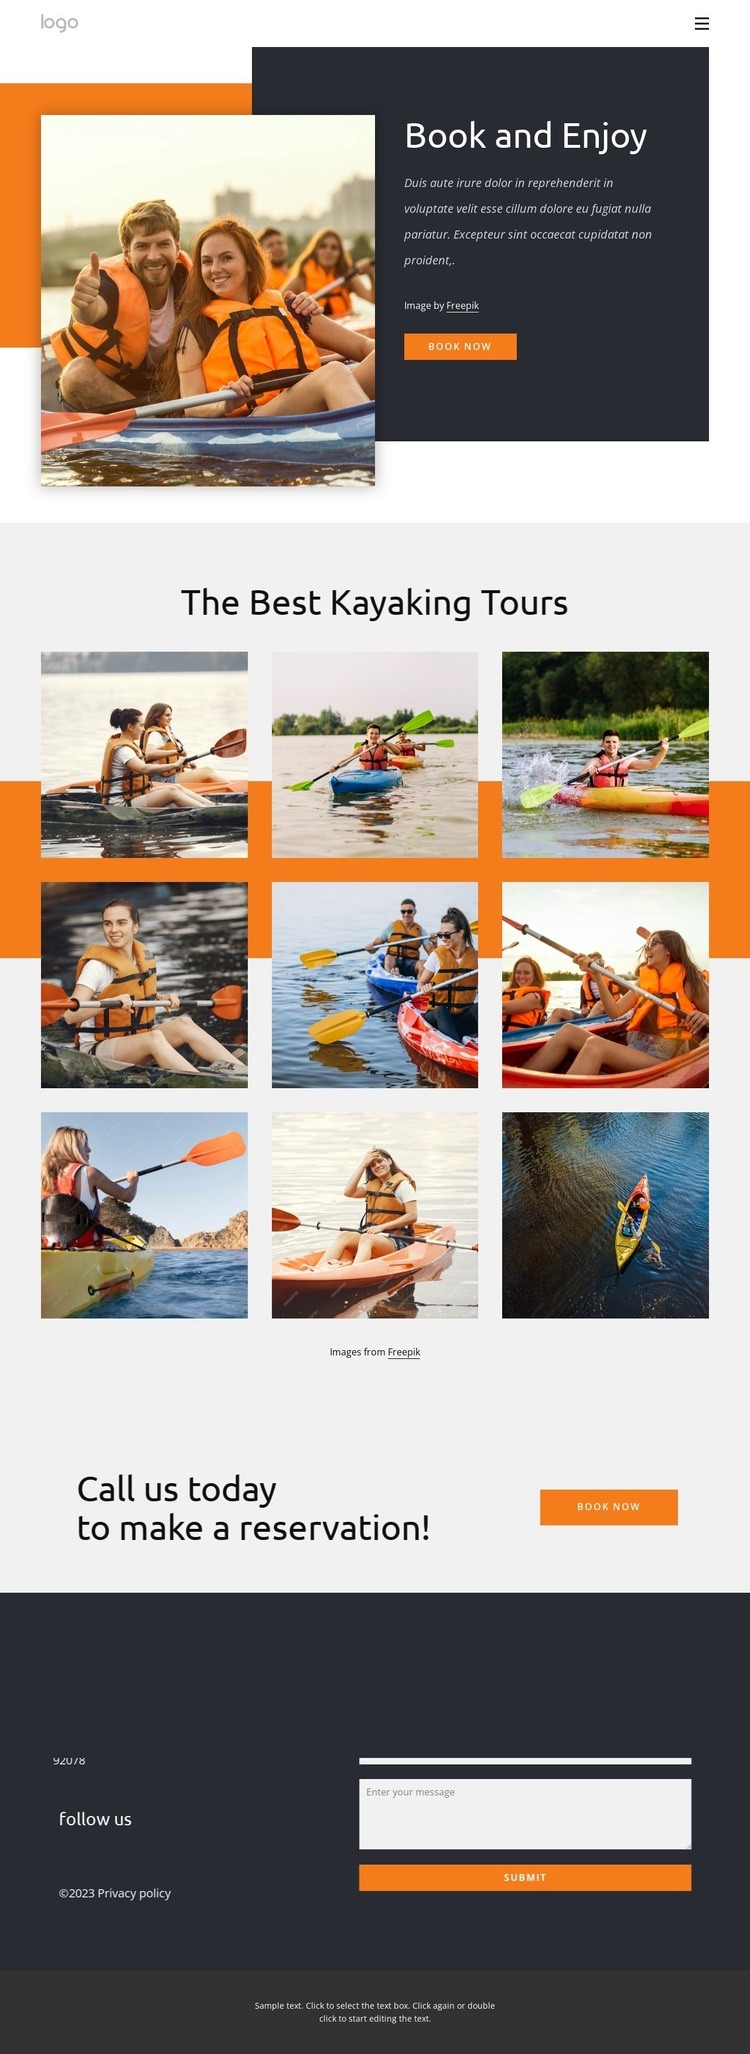 Kayaking tours and holidays Wysiwyg Editor Html 